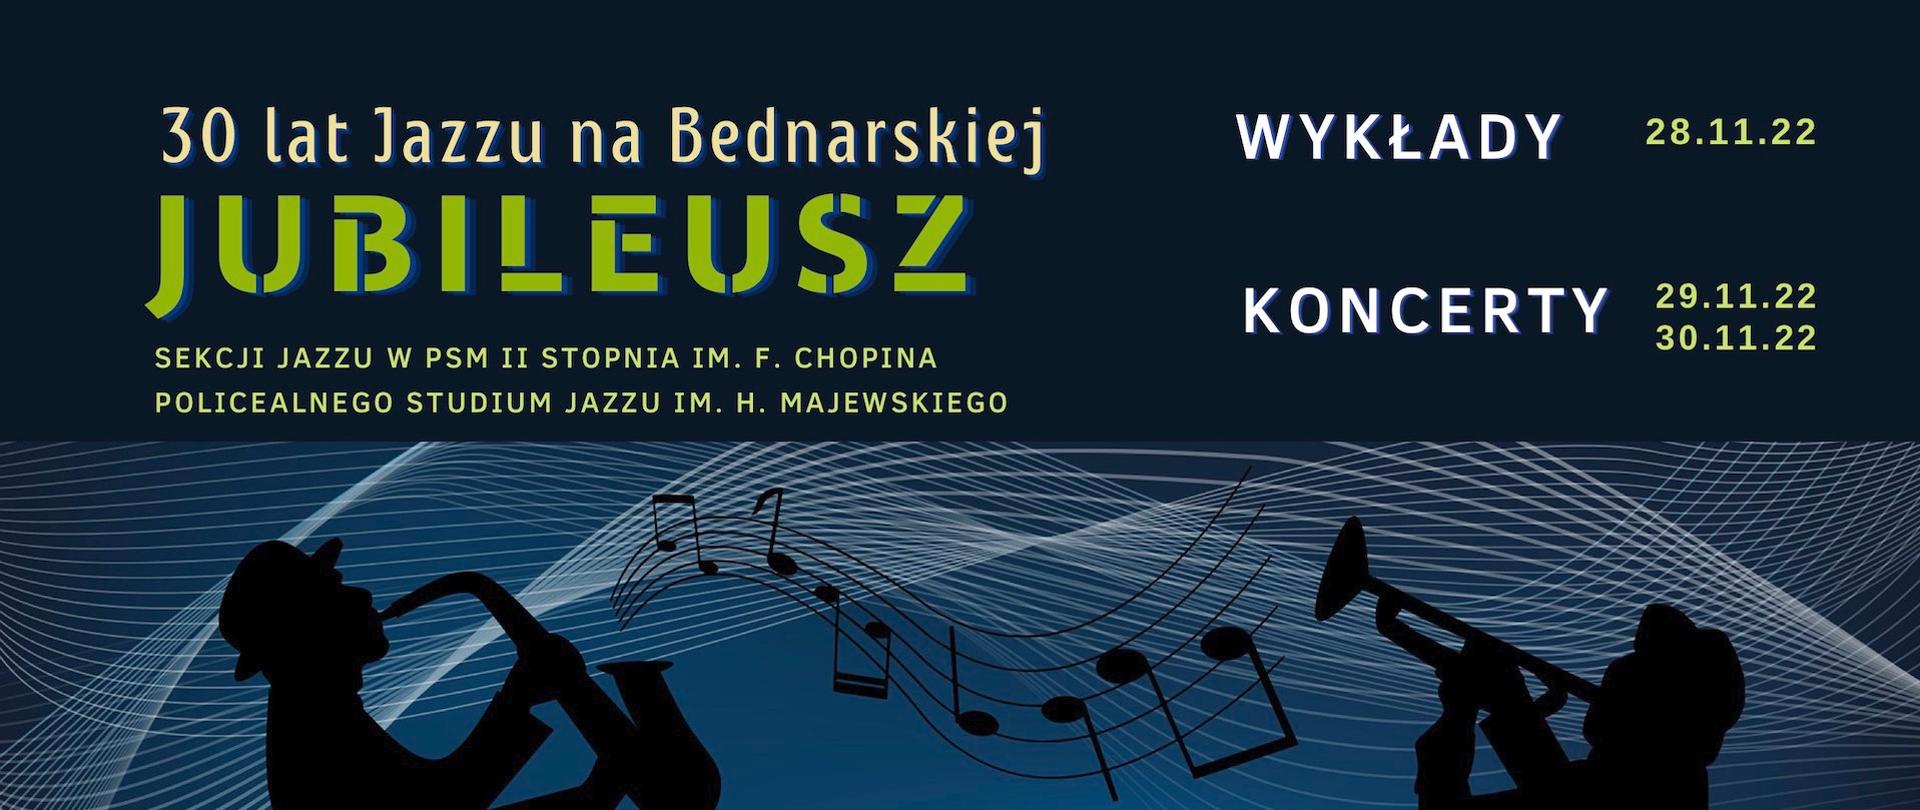 Afisz - grafika na ciemnym tle z napisem - 30 lat Jazzu na Bednarskiej, Jubileusz, Wykłady 28.11.2022, koncerty 29 i 30 listopada 2022 r.